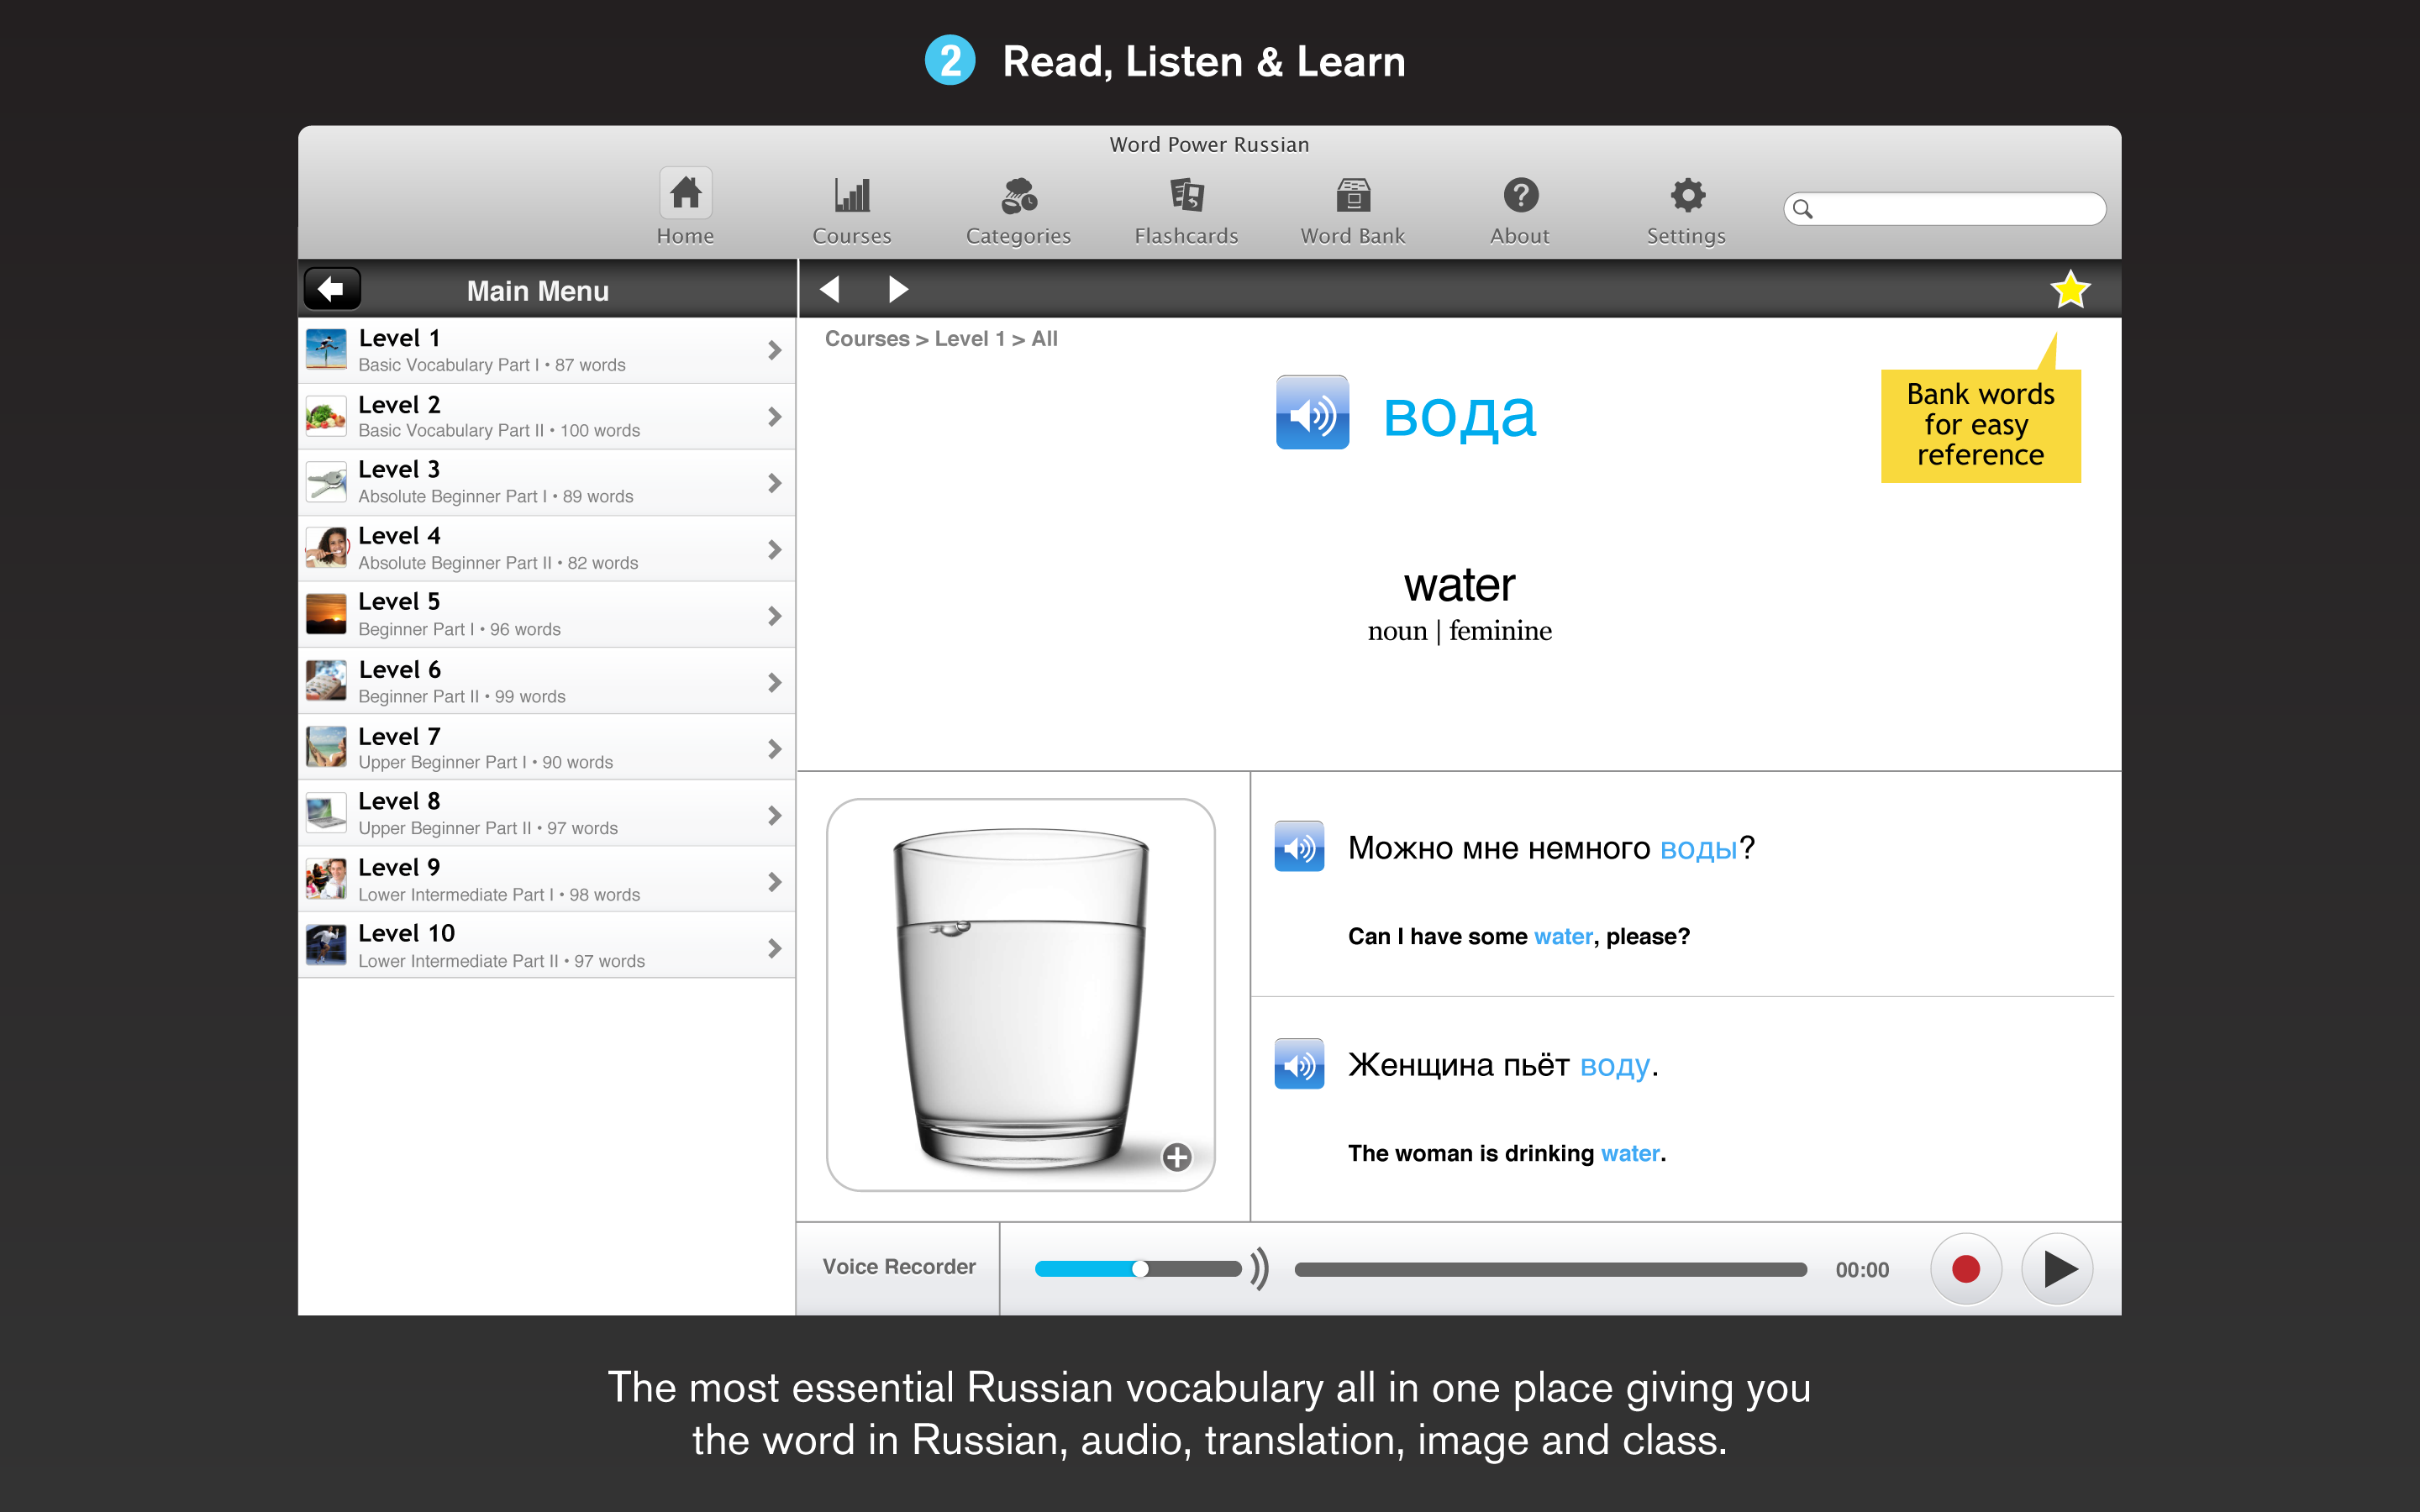 Screenshot 2 - Learn Russian - Gengo WordPower 